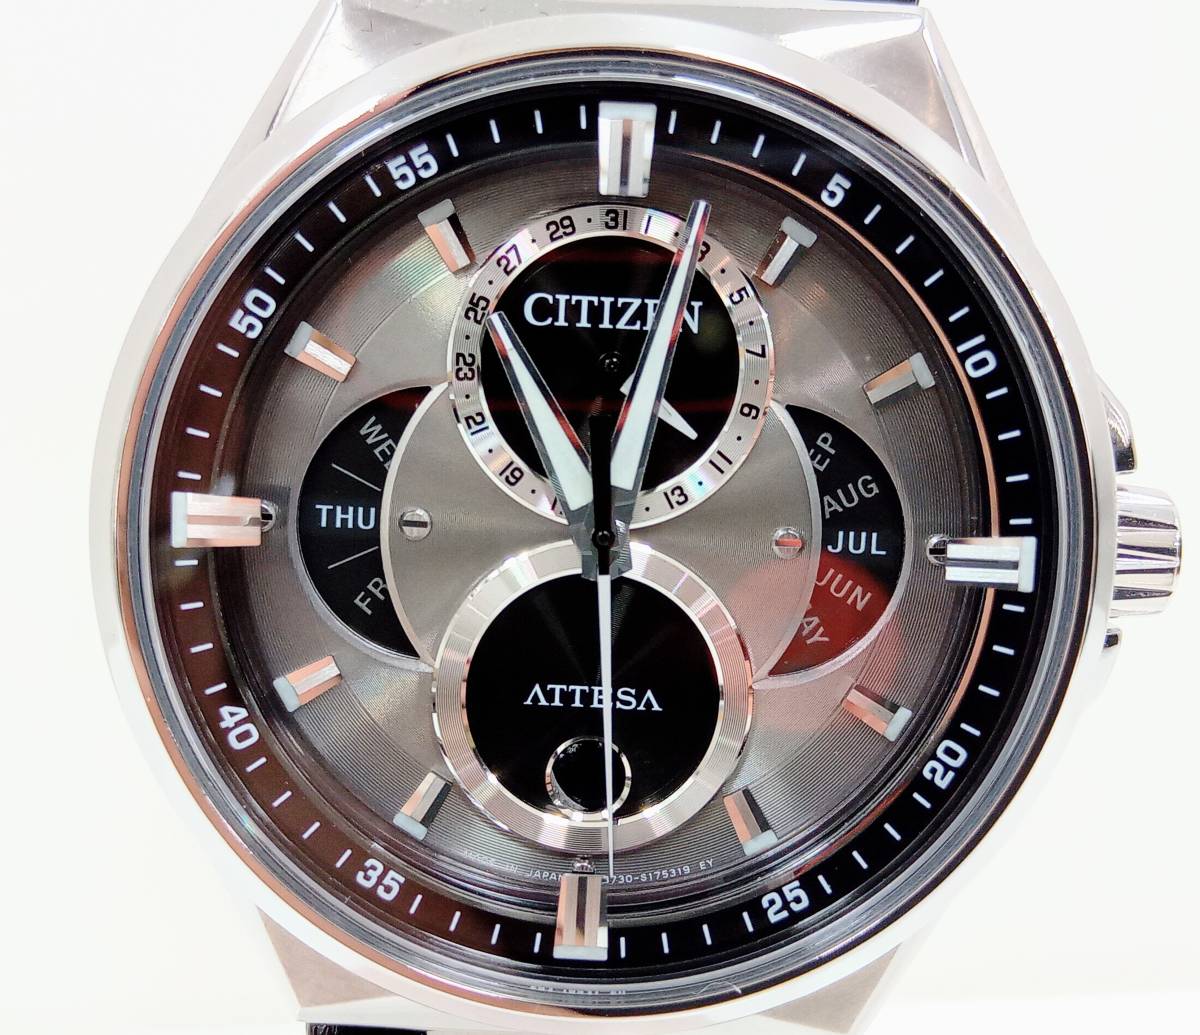 【箱付き】CITIZEN ATTESA 8730-S127921ソーラー トリプルカレンダー ムーンフェイズ エコドライブ チタン BU0060 腕時計